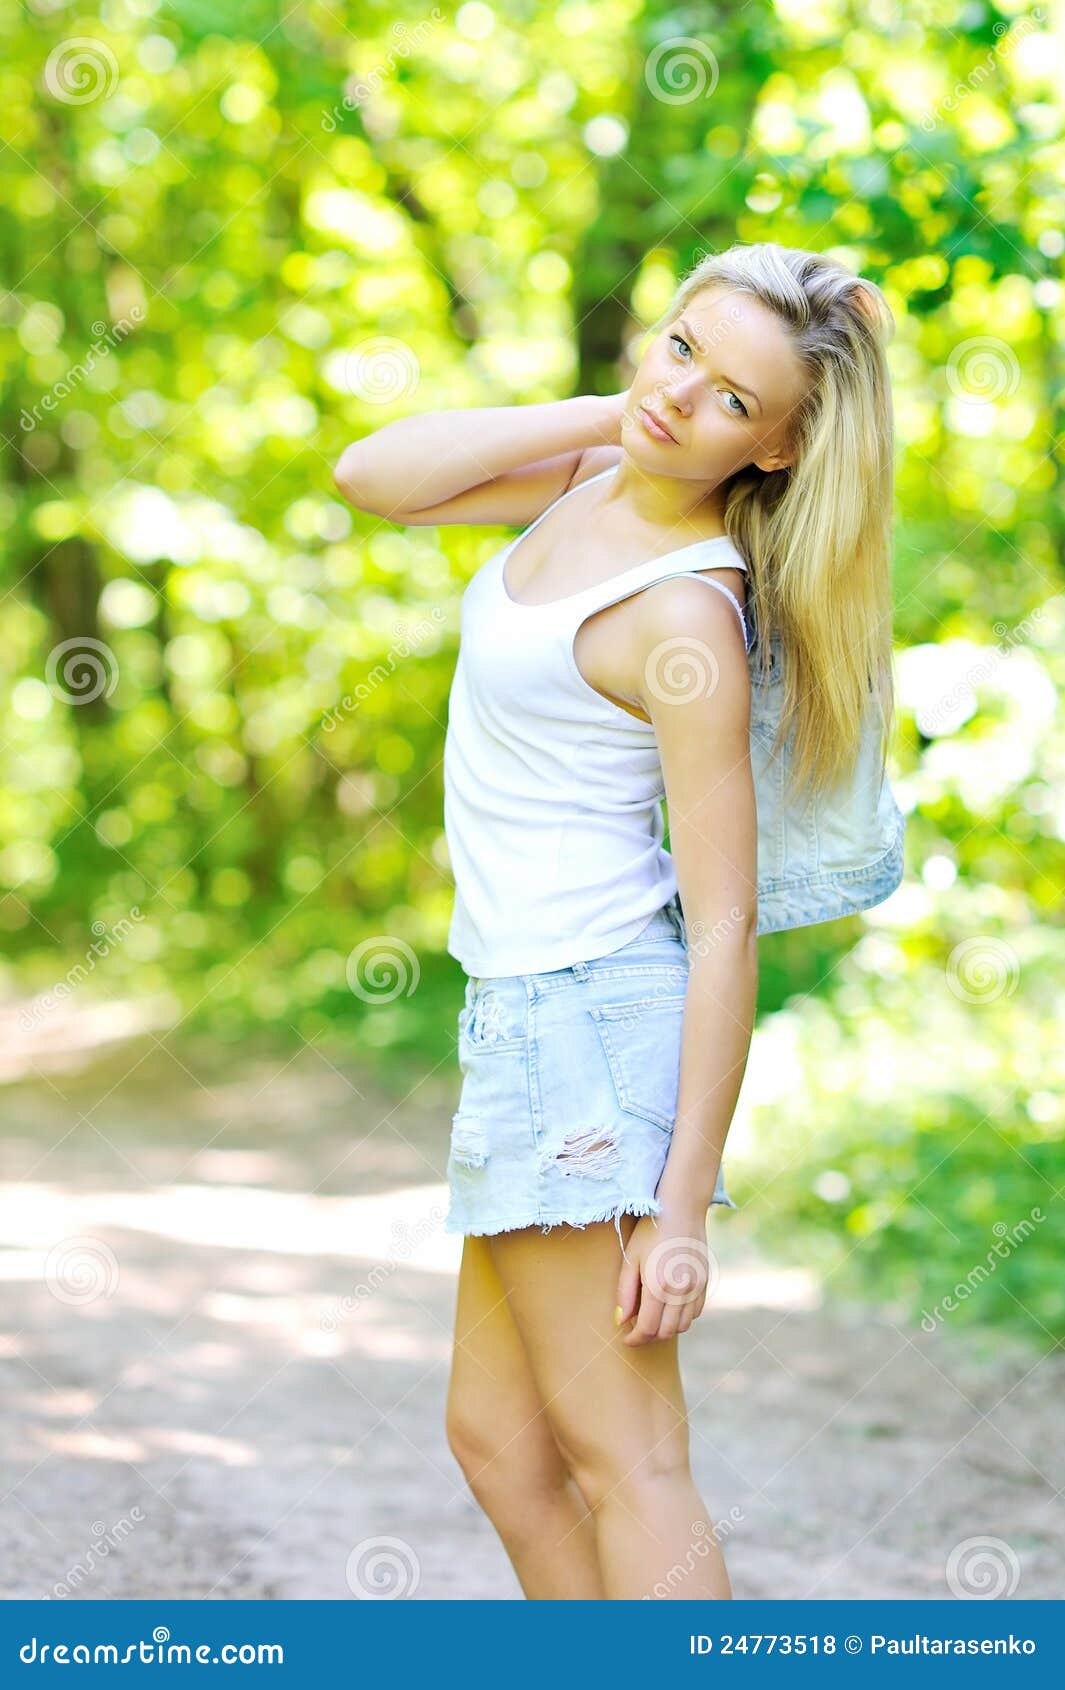 Beautiful girl portrait stock photo. Image of happy, girl - 24773518